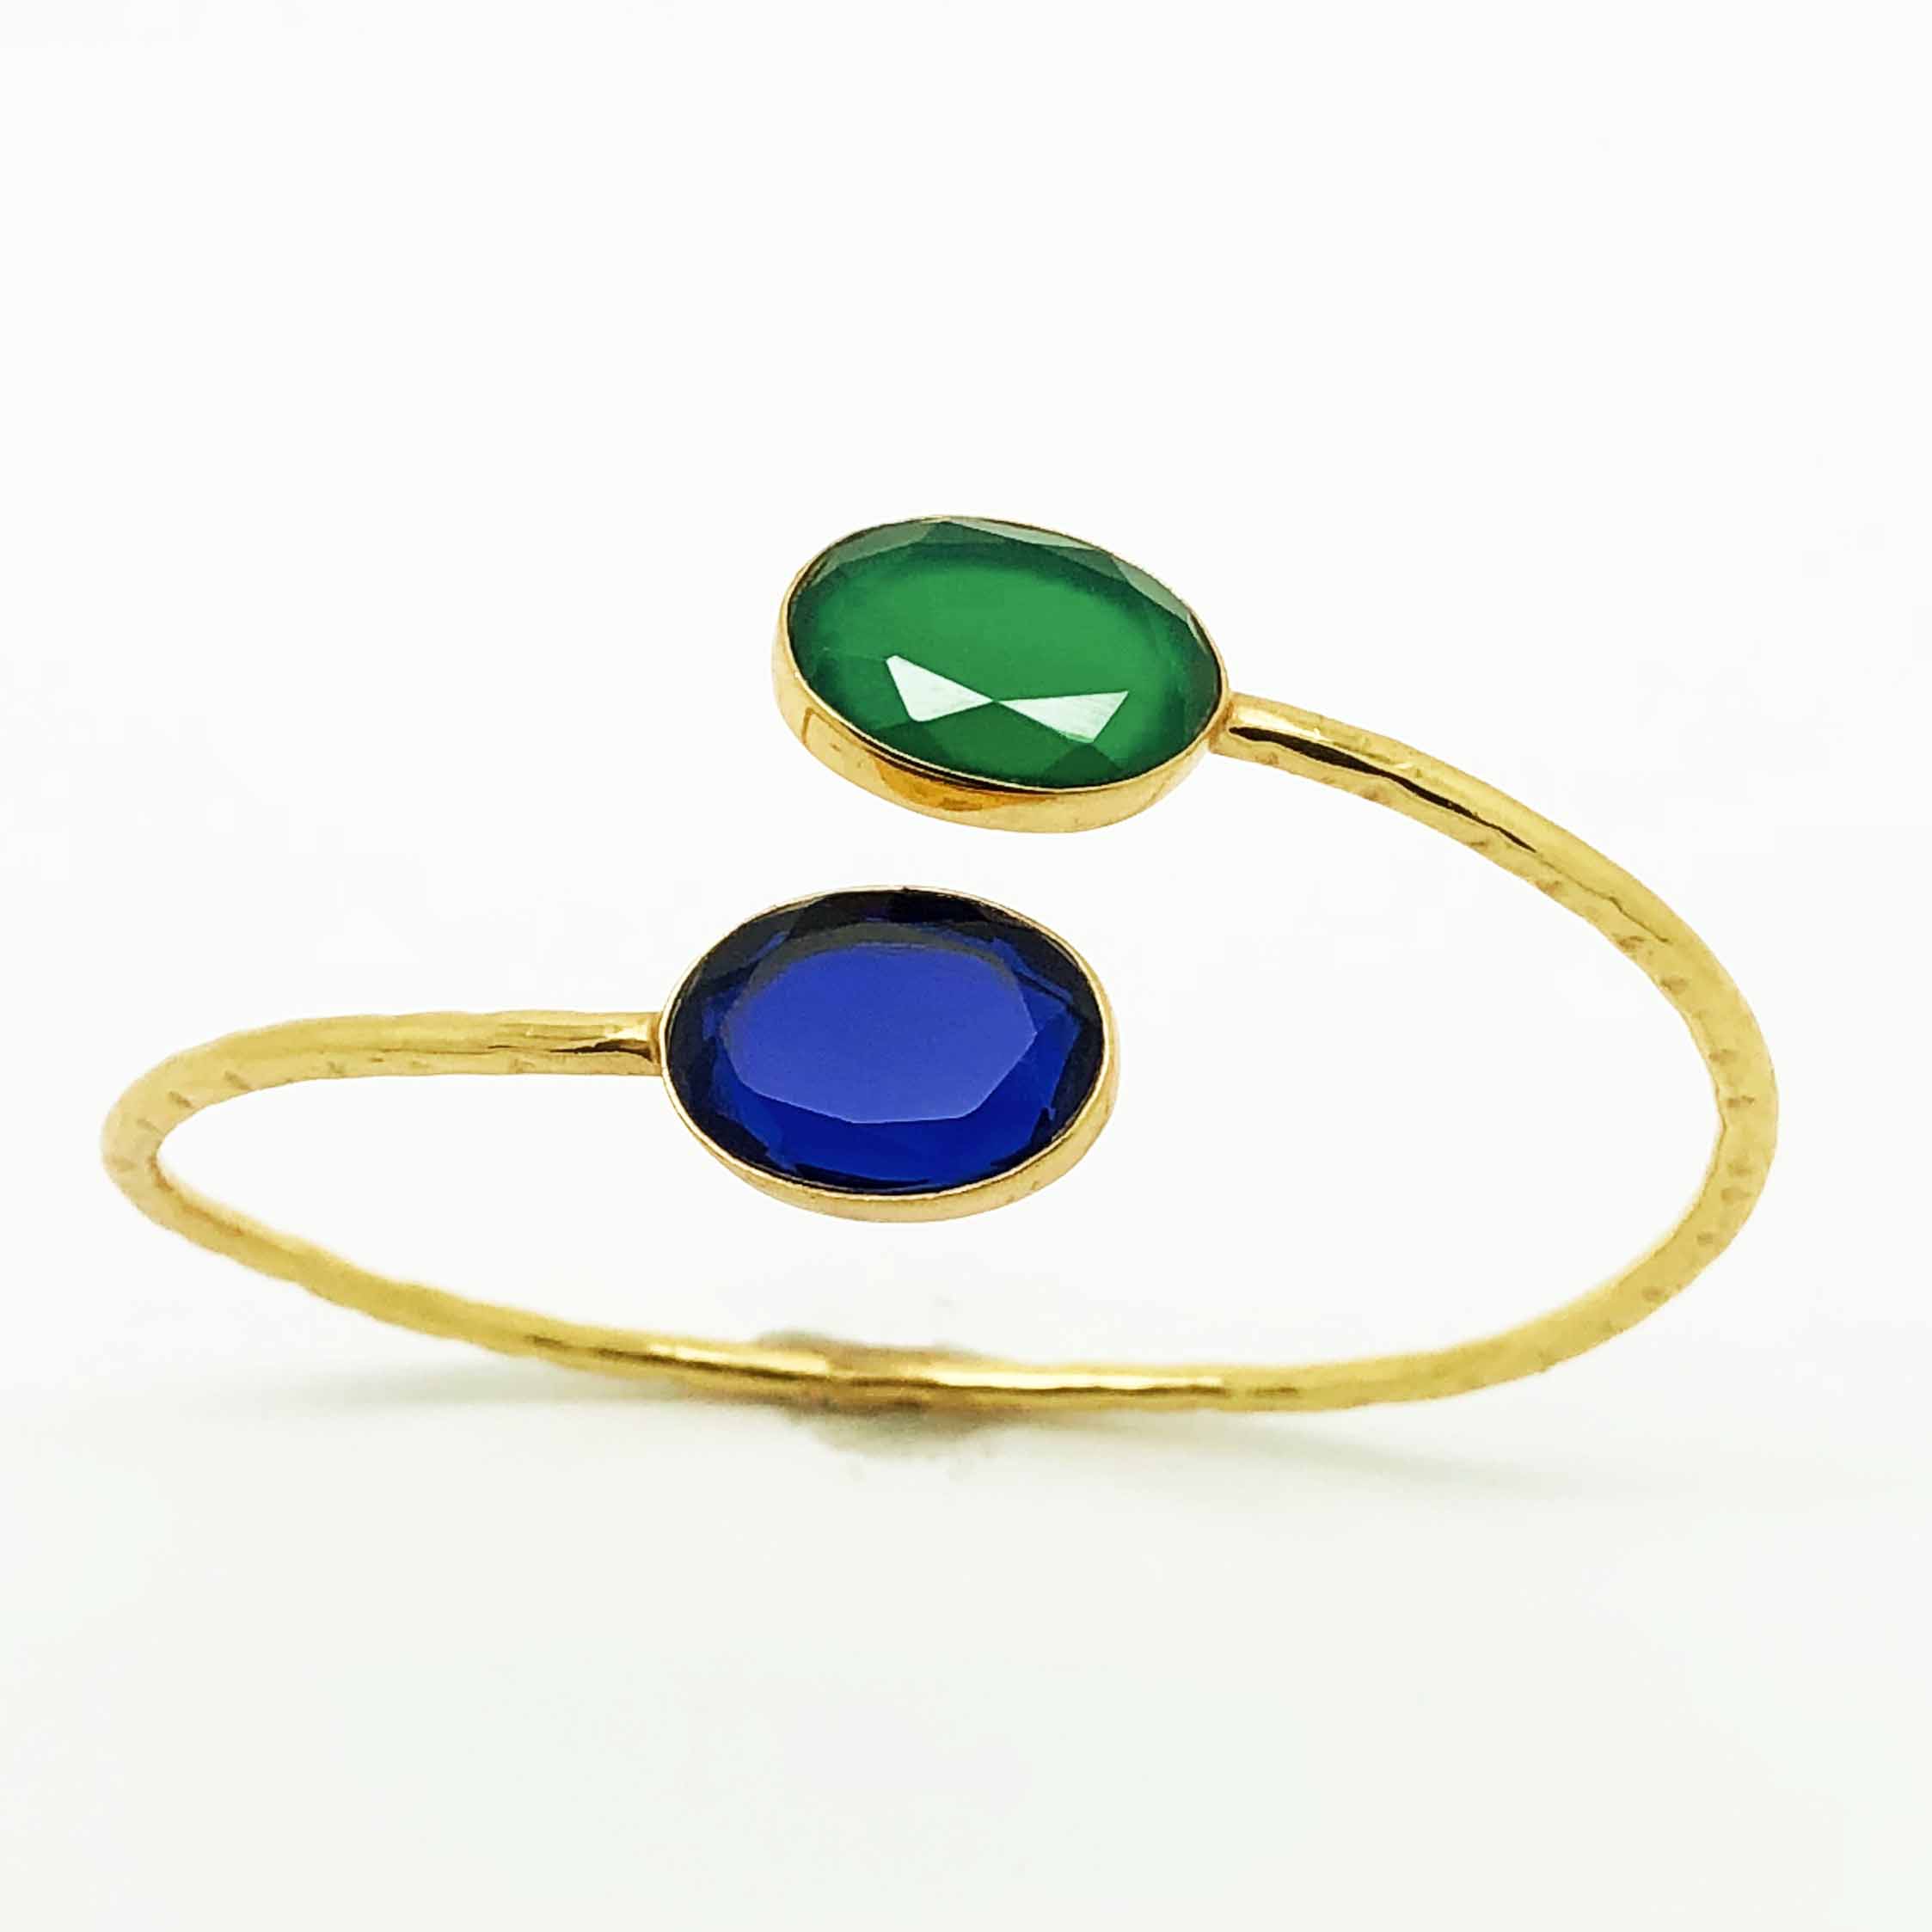 Handmade turquoise and onyx bracelet set